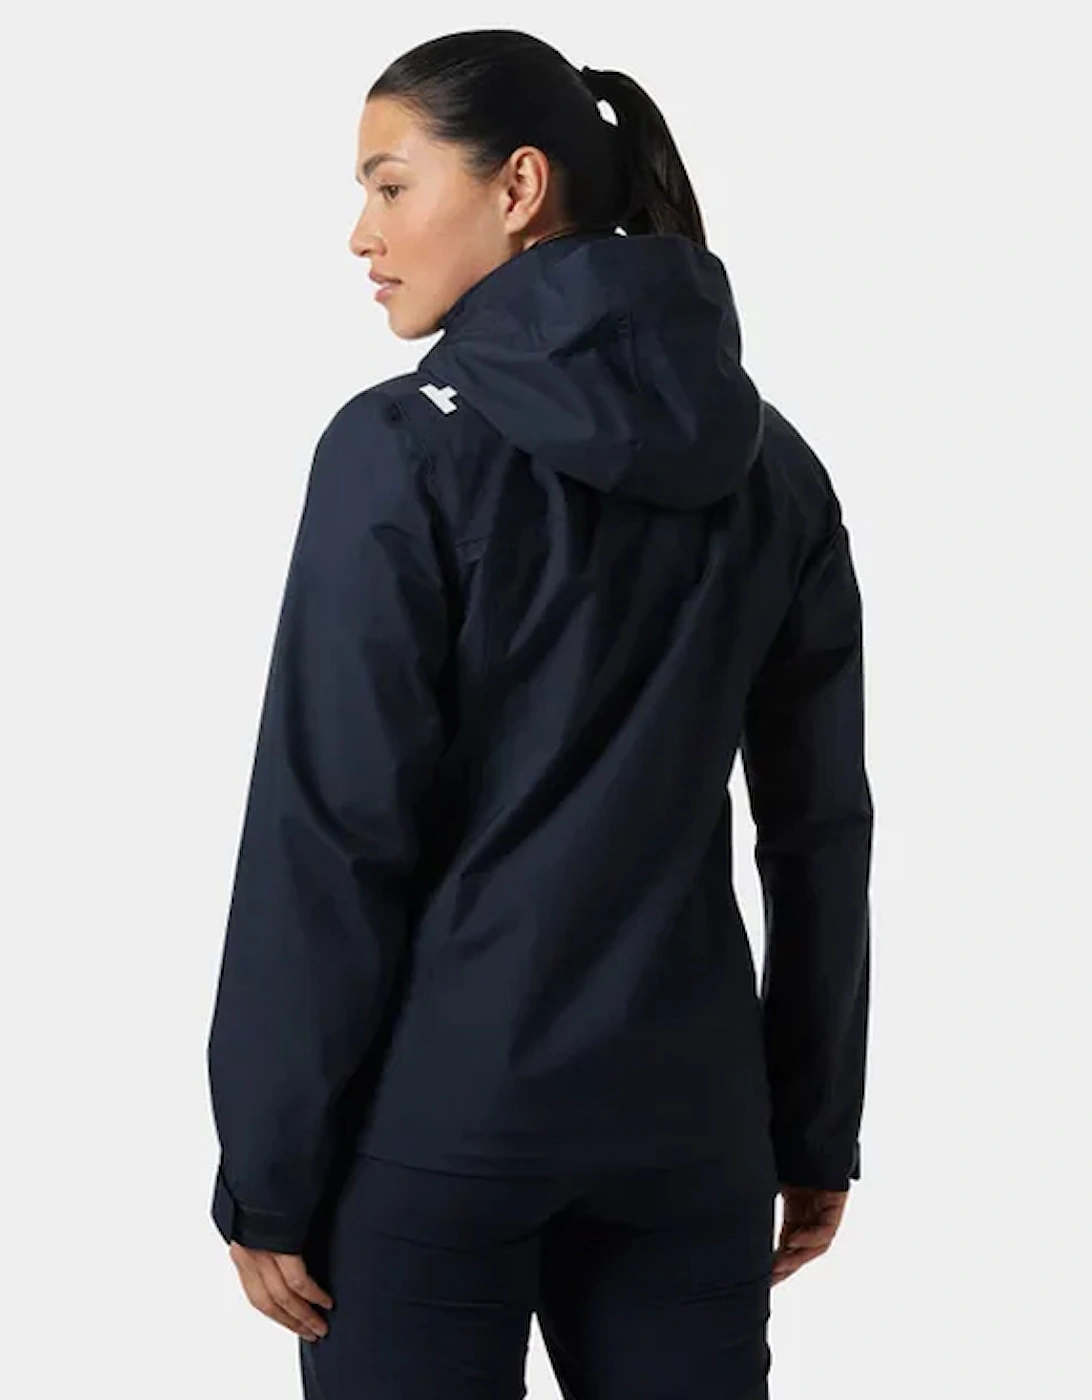 Women's Crew Hooded Jacket 2.0 Navy